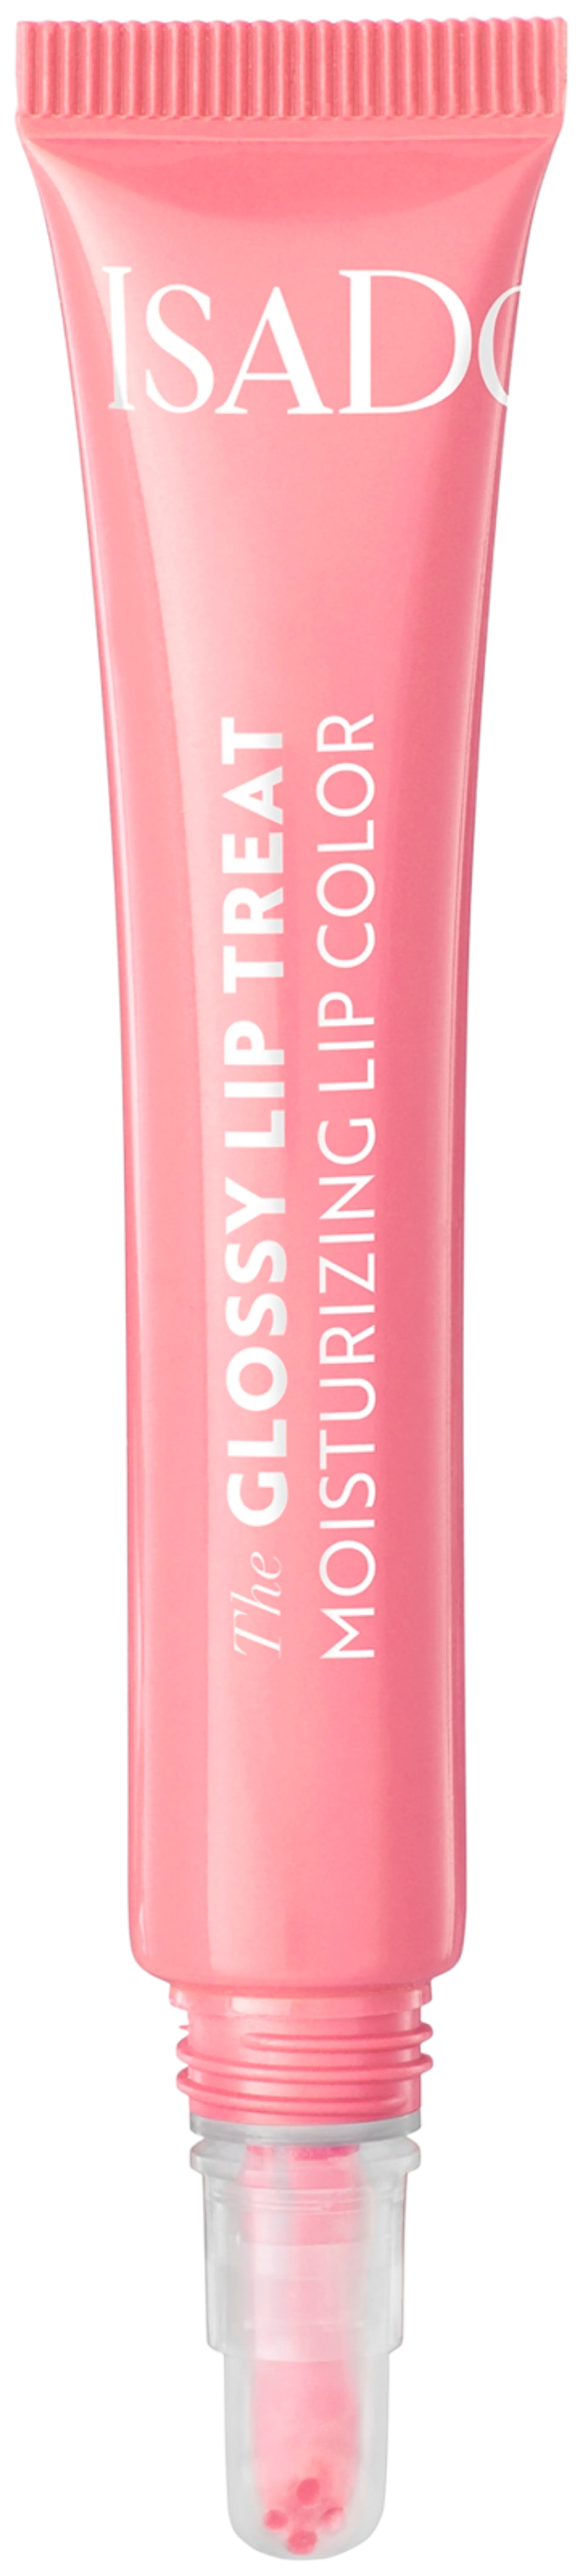 IsaDora Glossy Lip Treat - 1